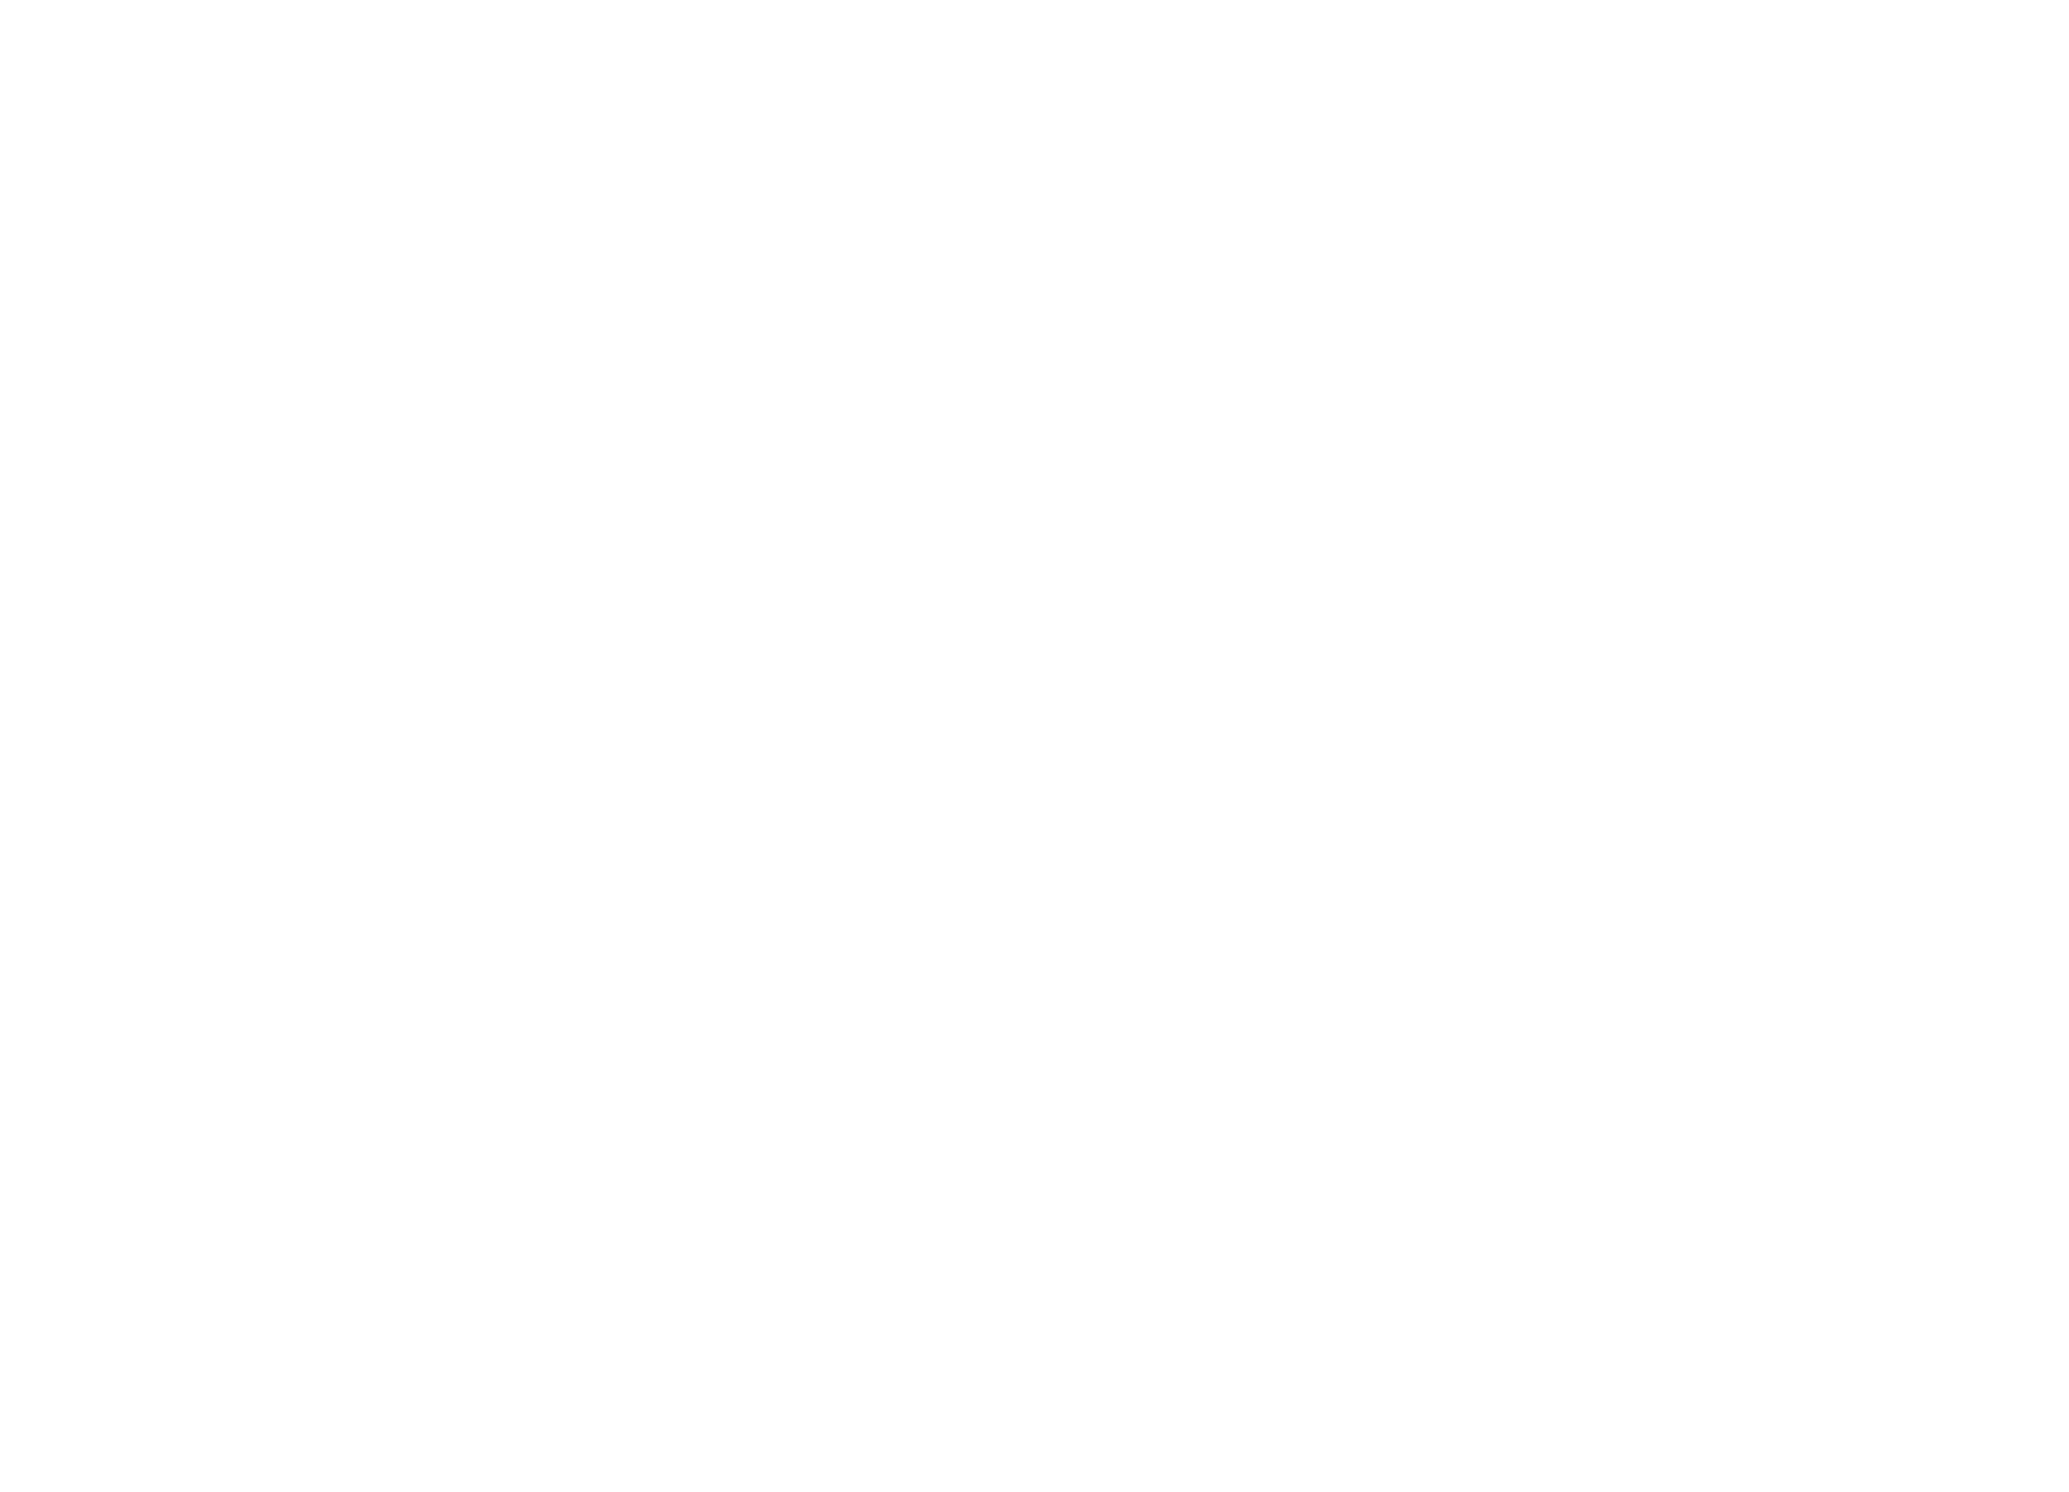 The U Too